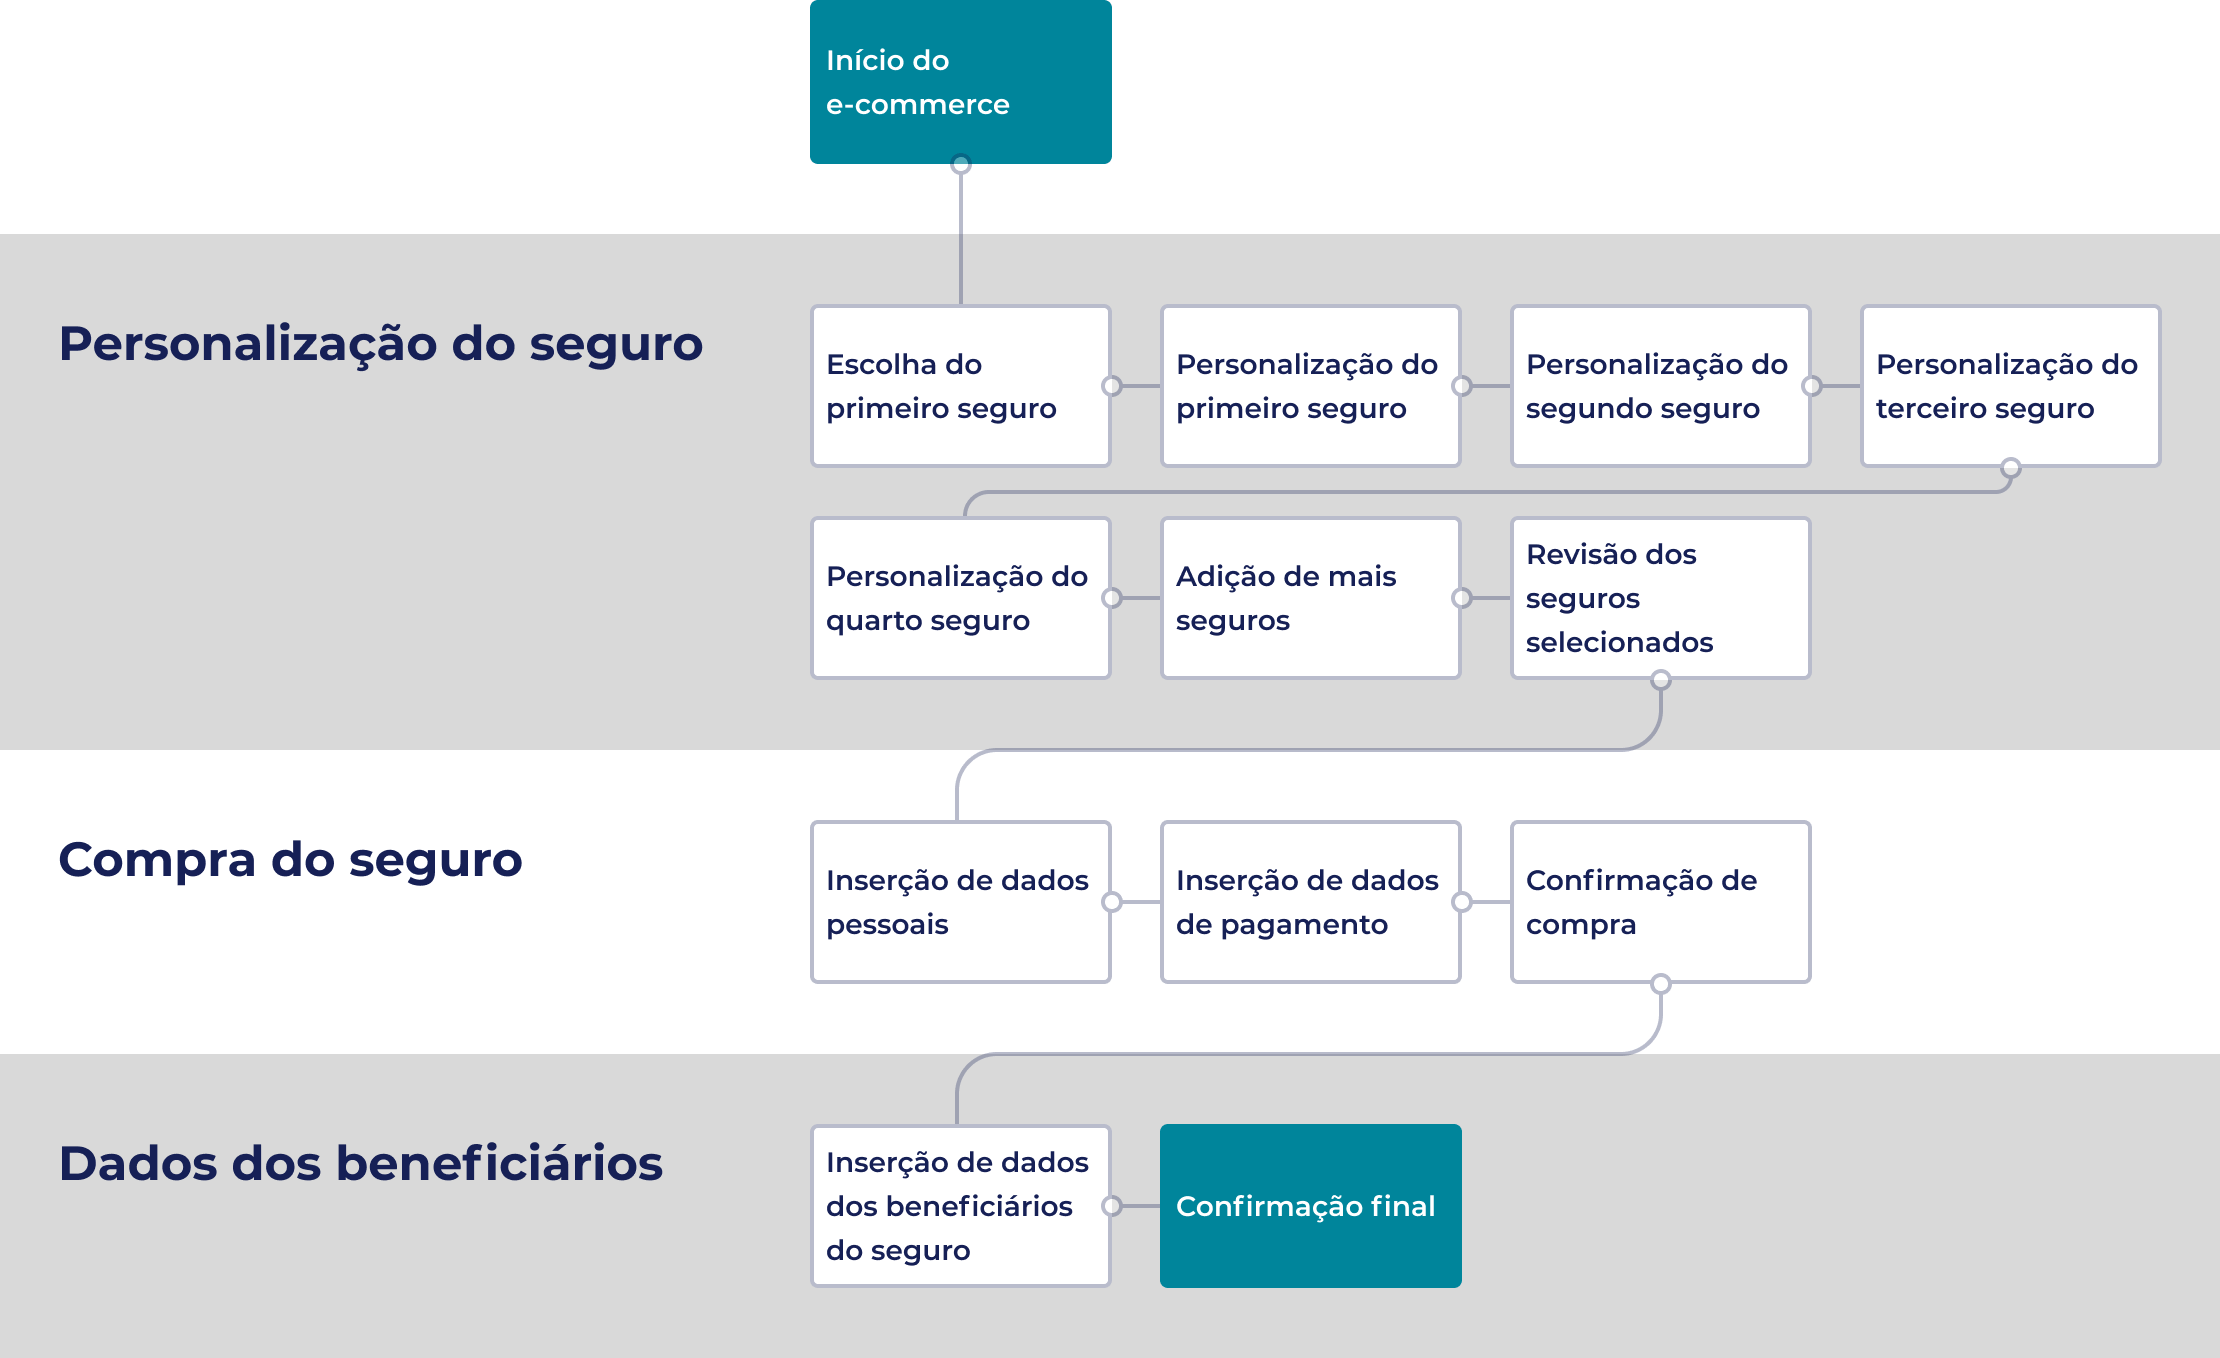 Diagrama com 11 retângulos dispostos em sequência. Cada retângulo representa uma etapa do fluxo do protótipo. As etapas estão divididas em personalização do seguro, compra do seguro e inserção dos dados dos beneficiários.